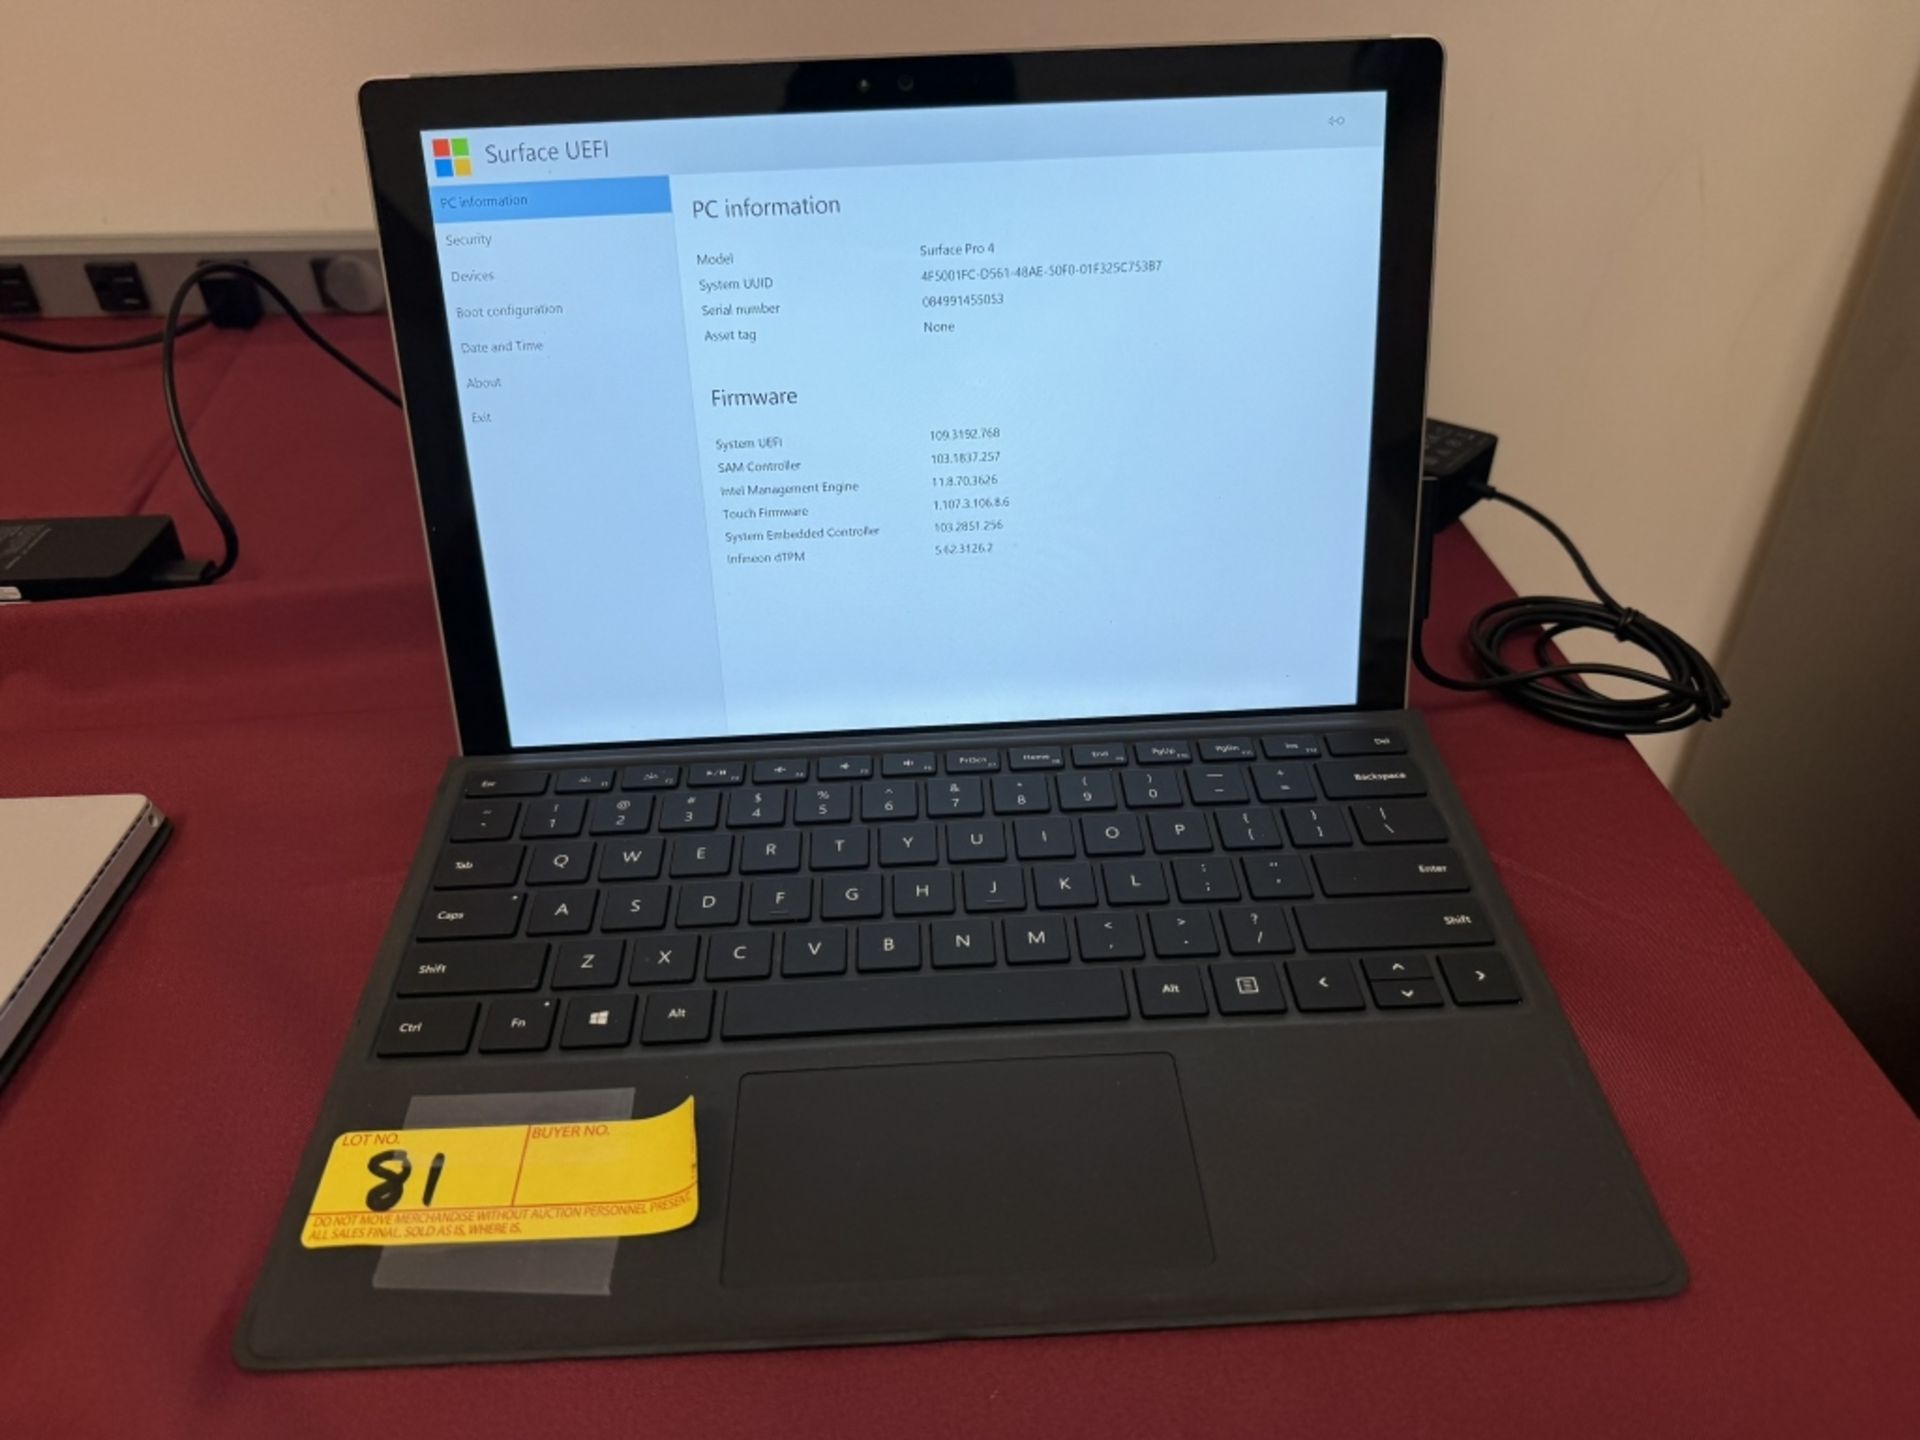 Microsoft Surface Pro 4 Corei7 8GB RAM 256GB SSD - Image 5 of 8